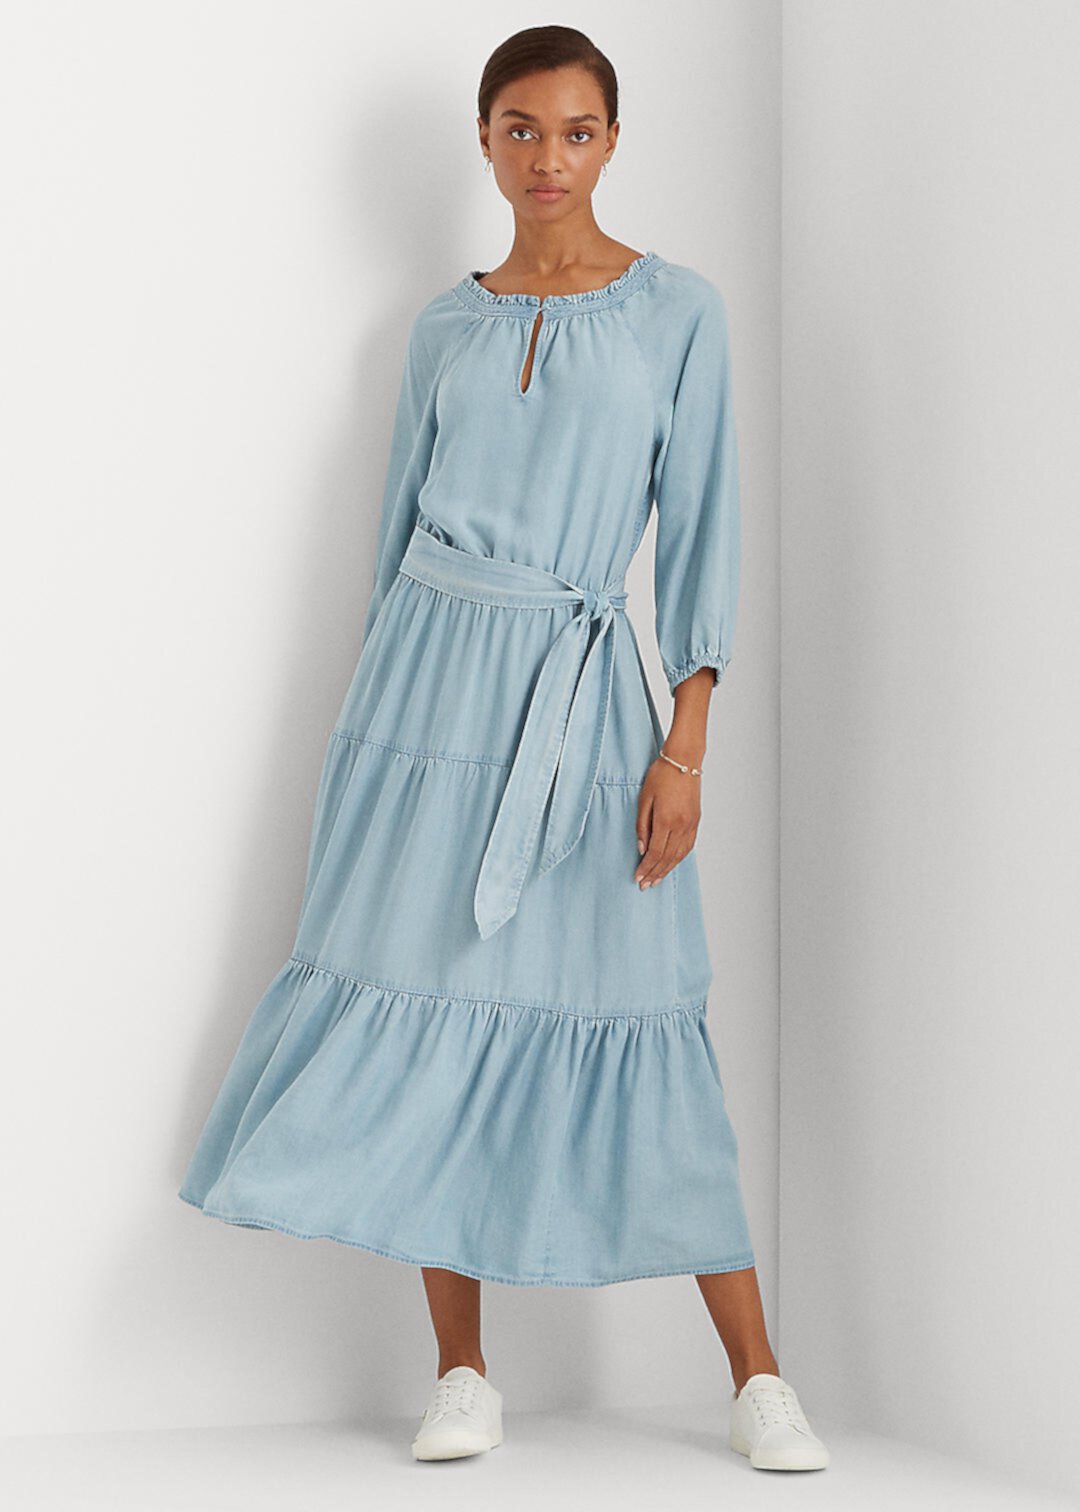 Платье цвета индиго с пышными рукавами Ralph Lauren